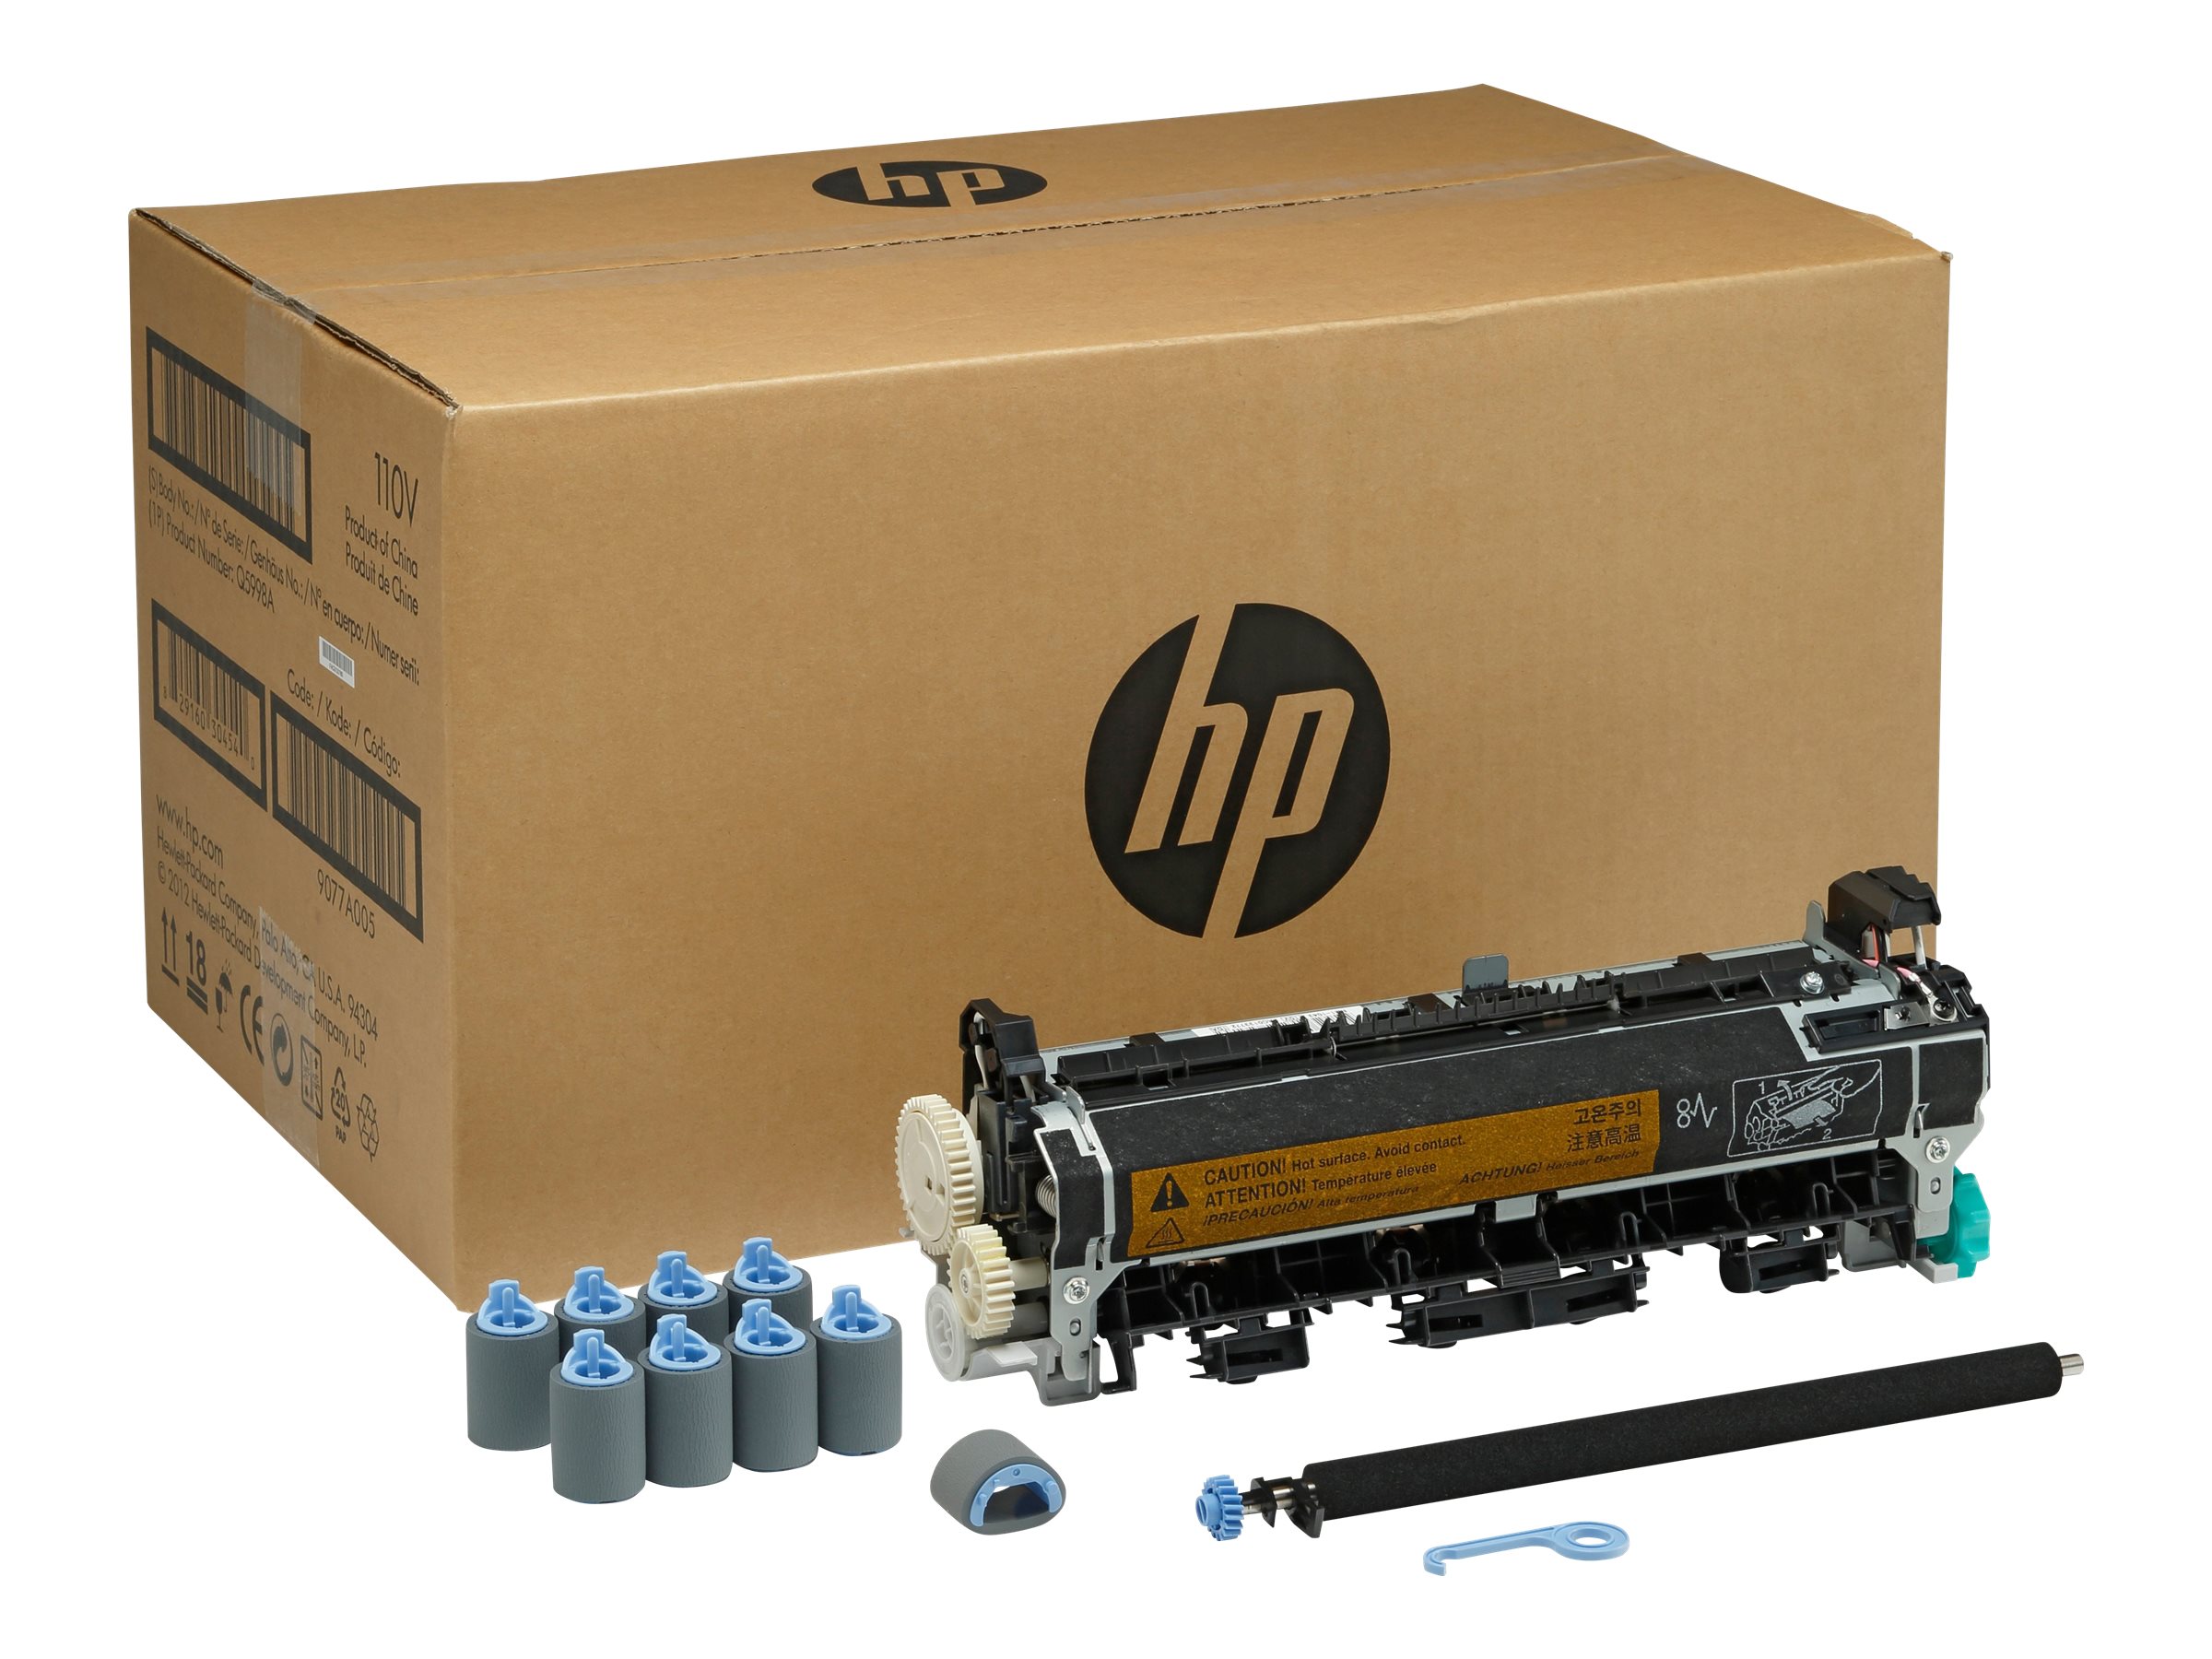 HP Maintenance Kit 220V LJ 4345